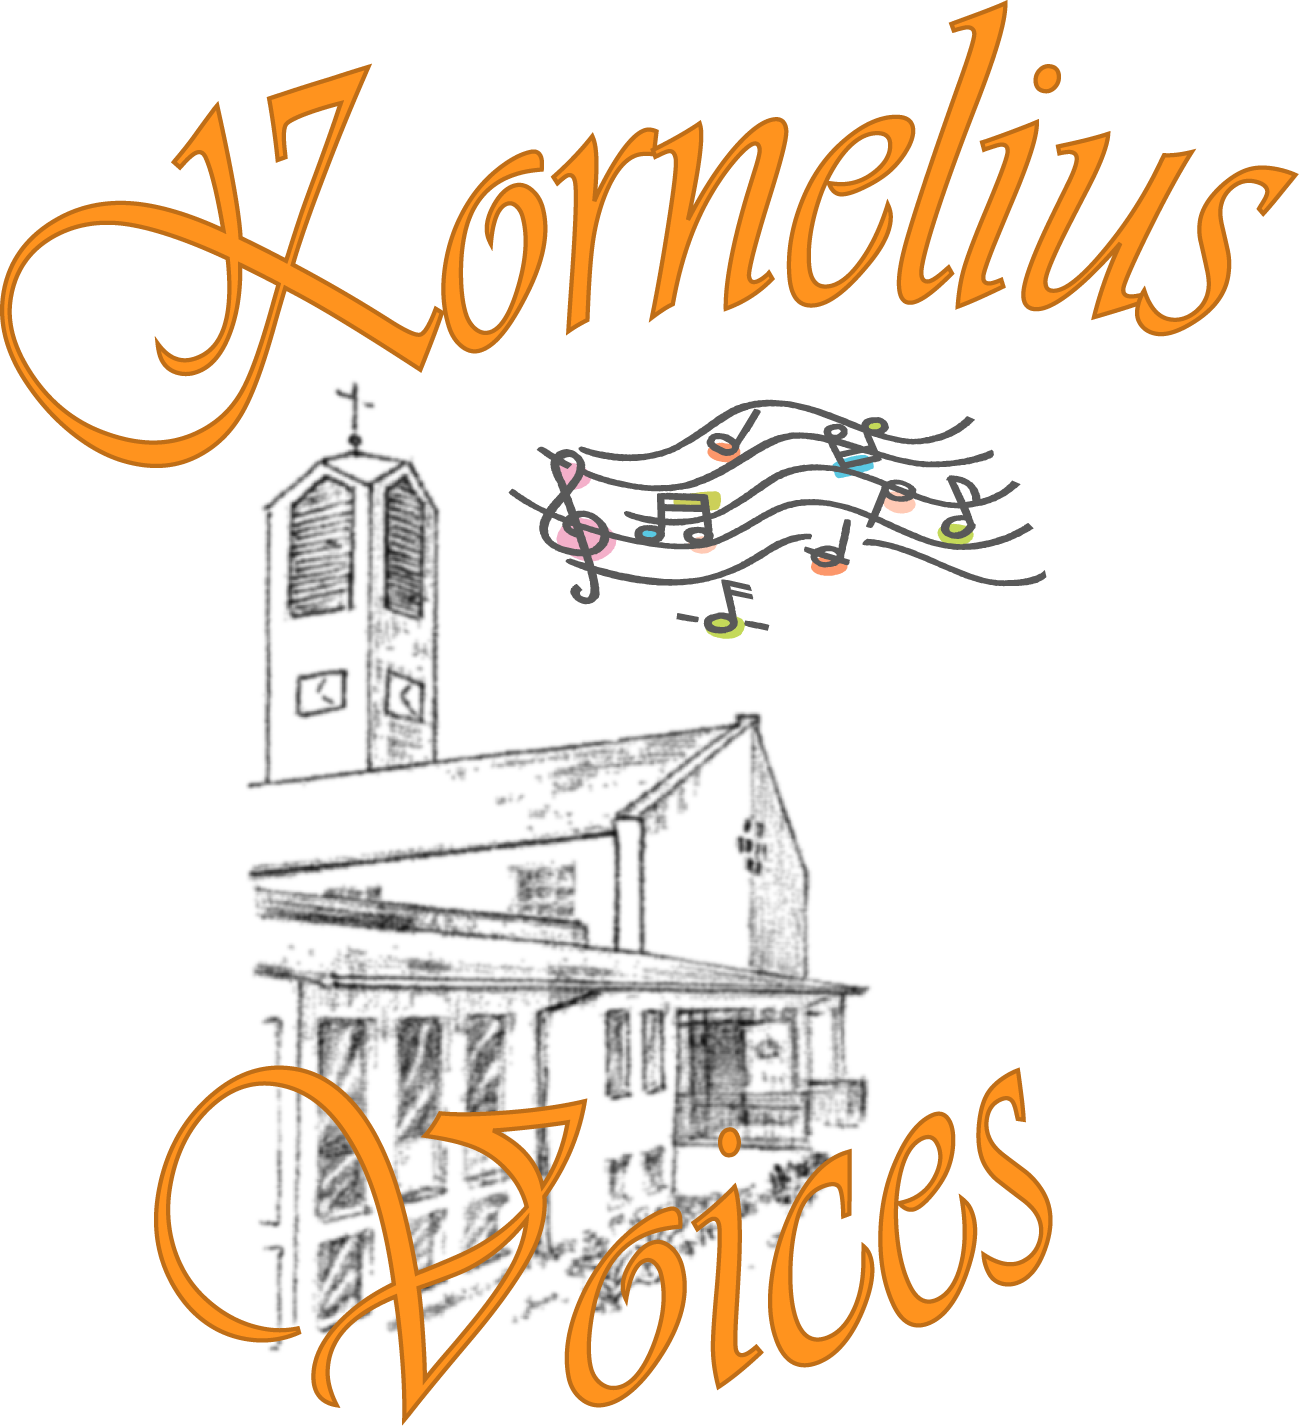 Kornelius Voices Logo